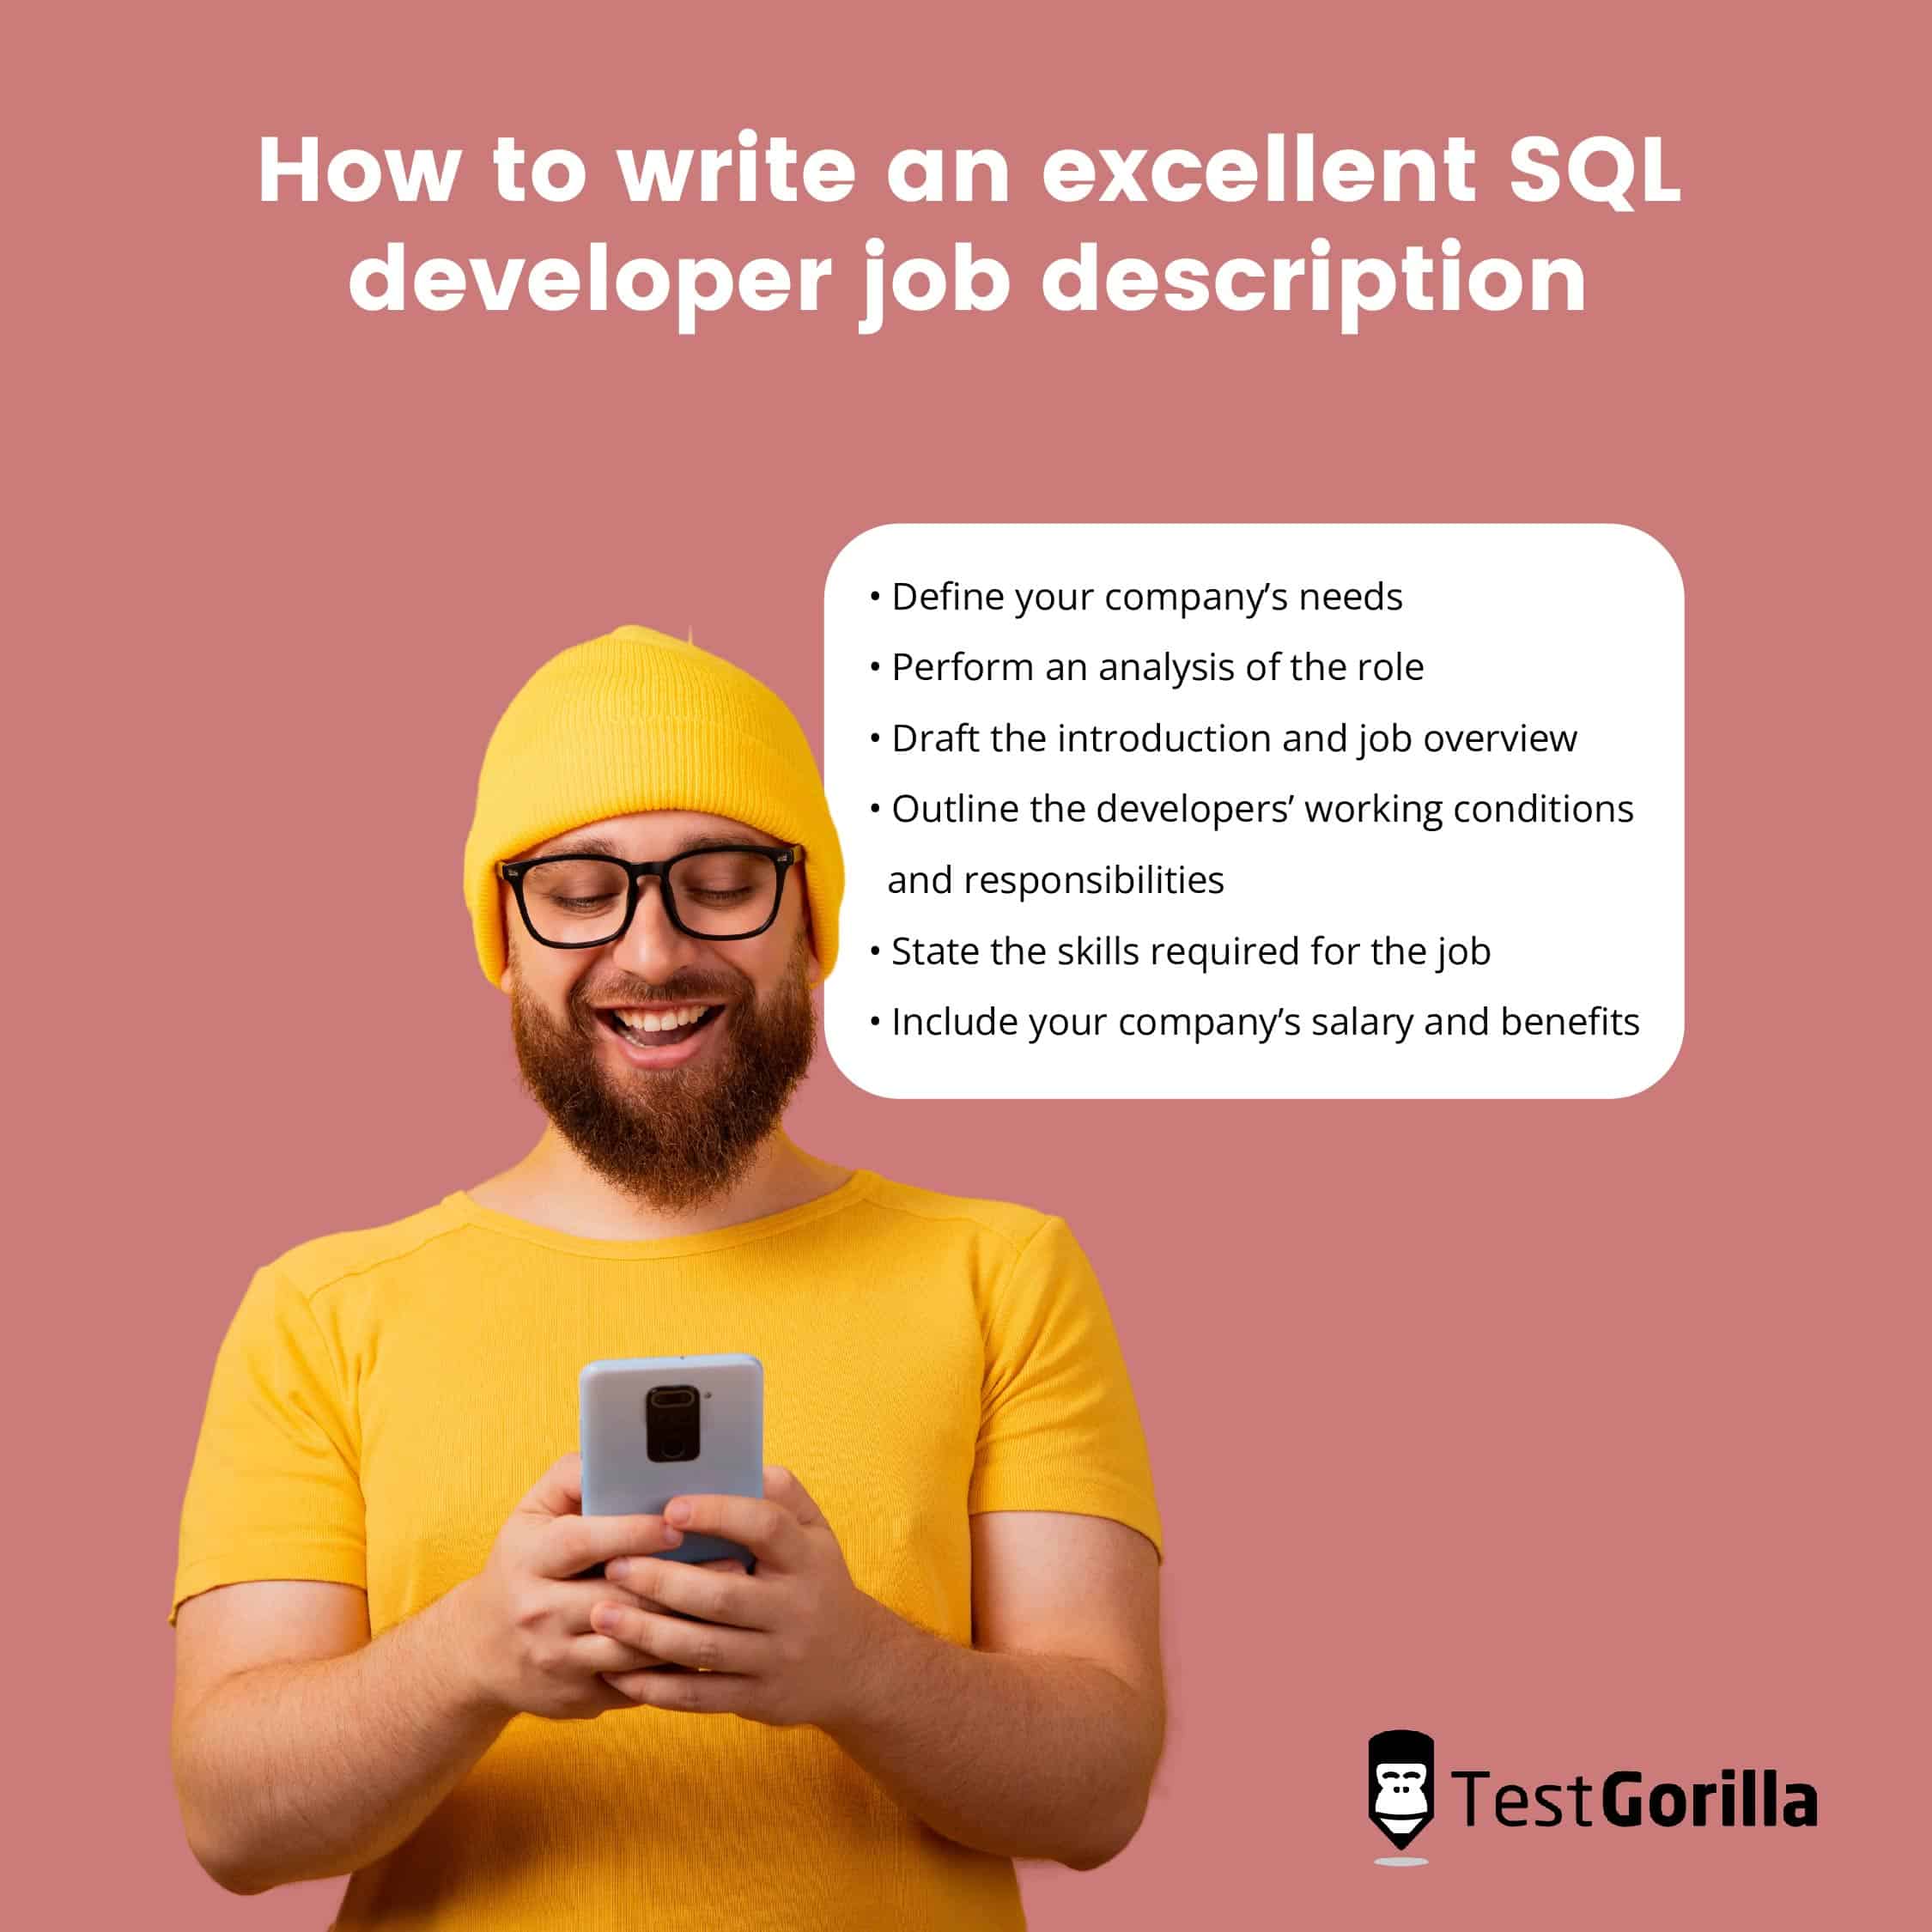 How to write an excellent SQL developer job description